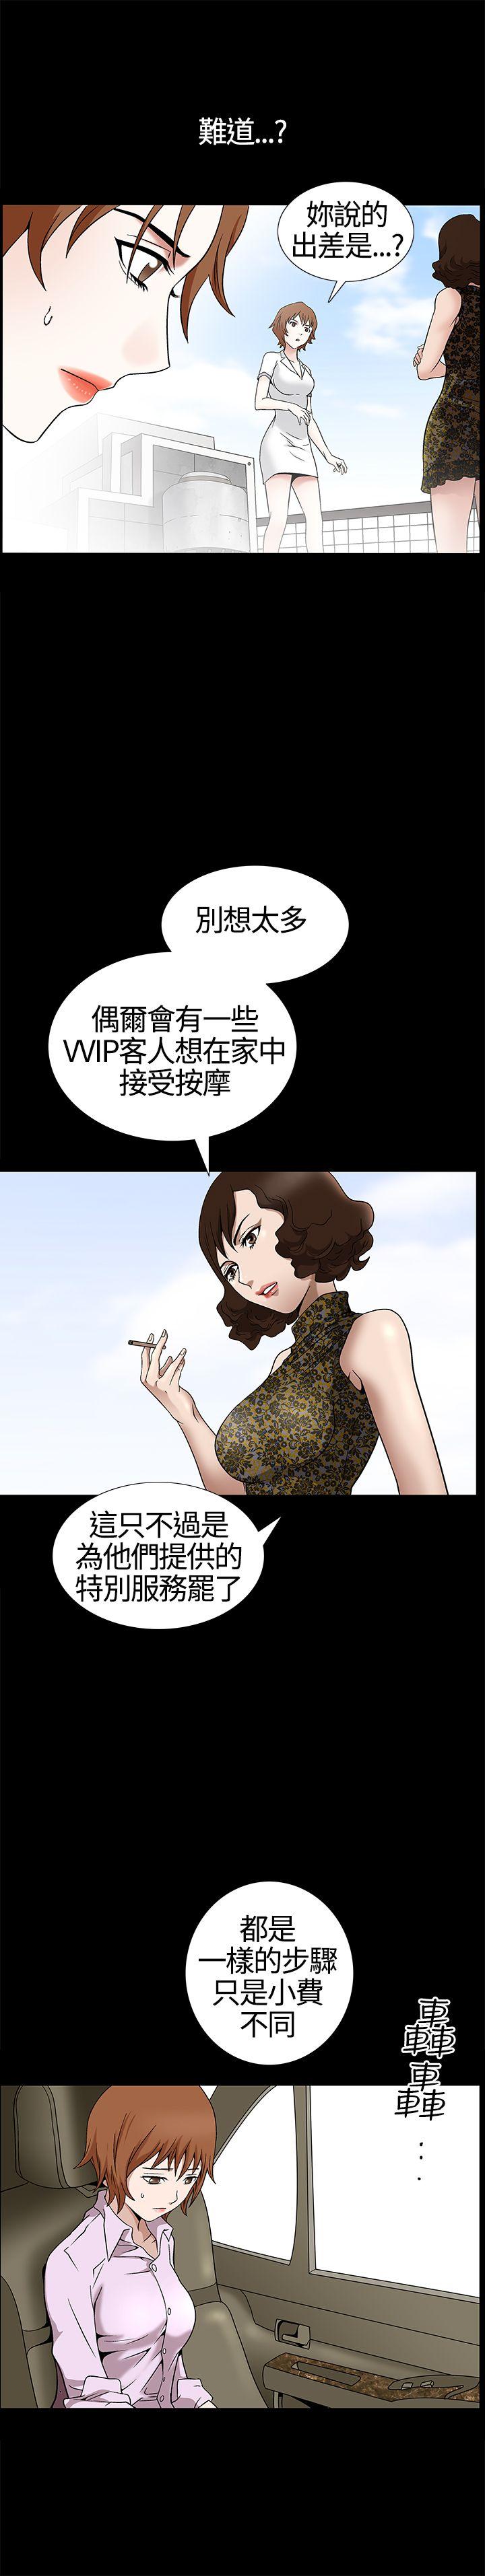 韩国污漫画 人妻性解放3:粗糙的手 第12话 22